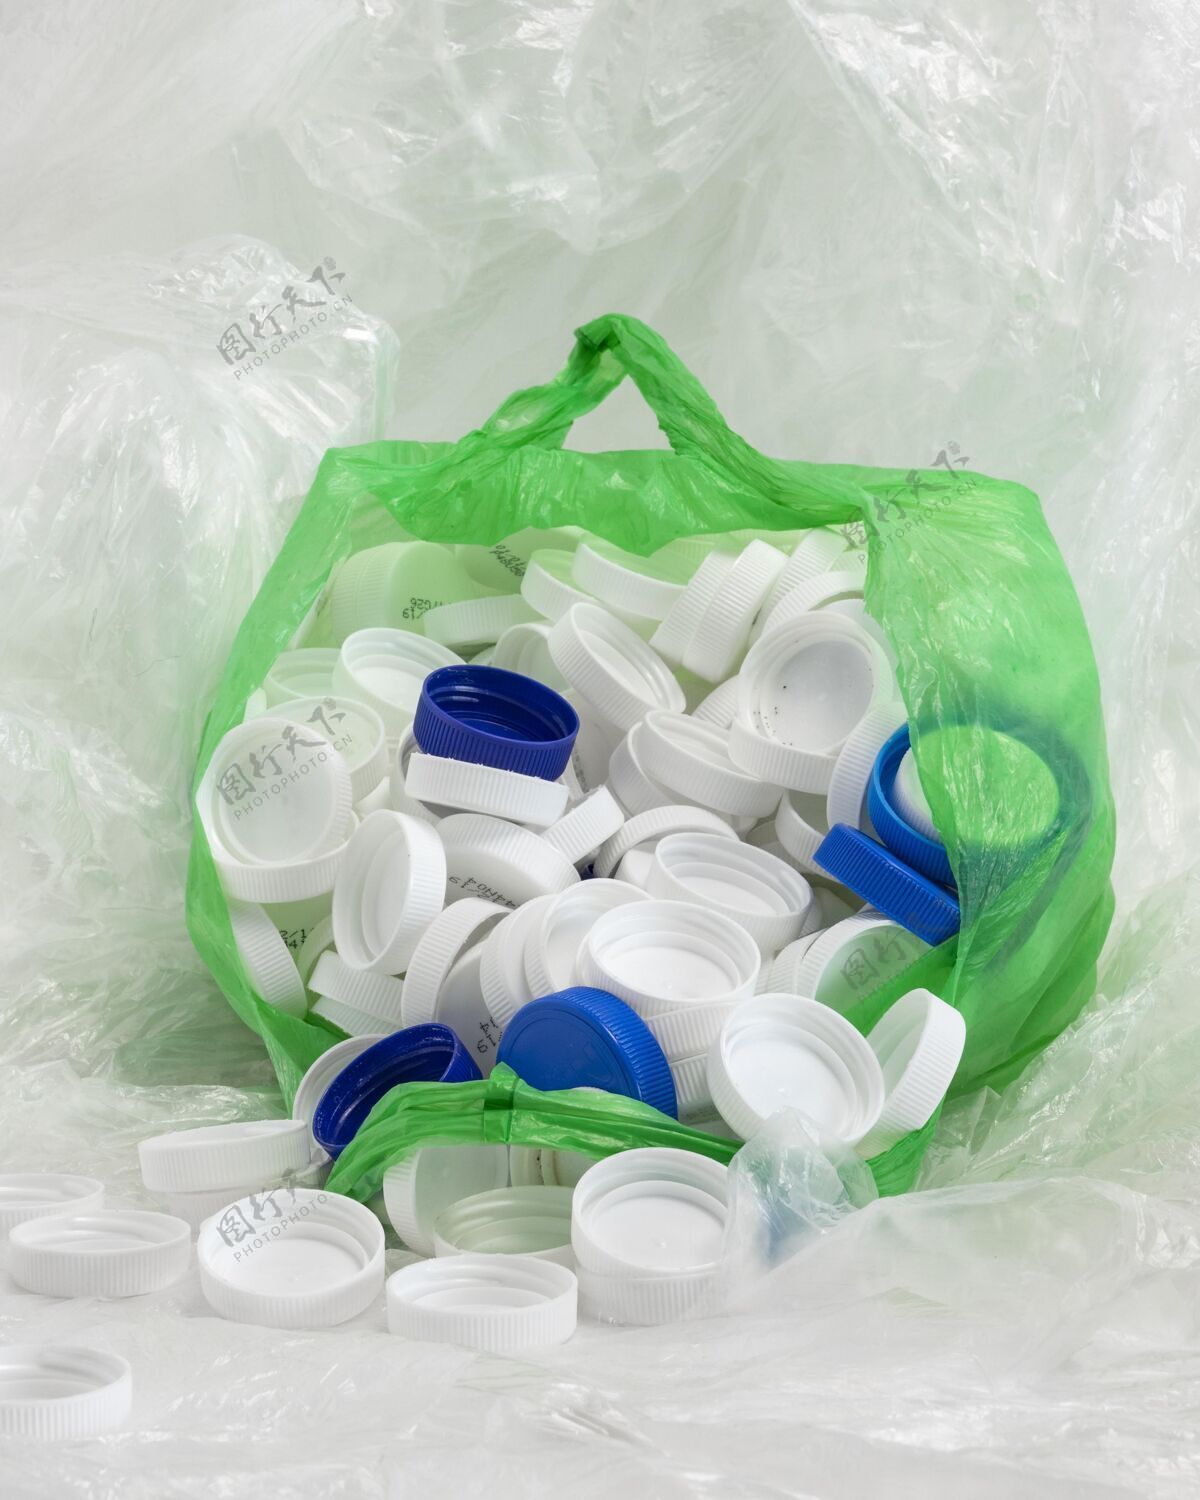 塑料正面视图非环保塑料元件排列安排生态可持续发展